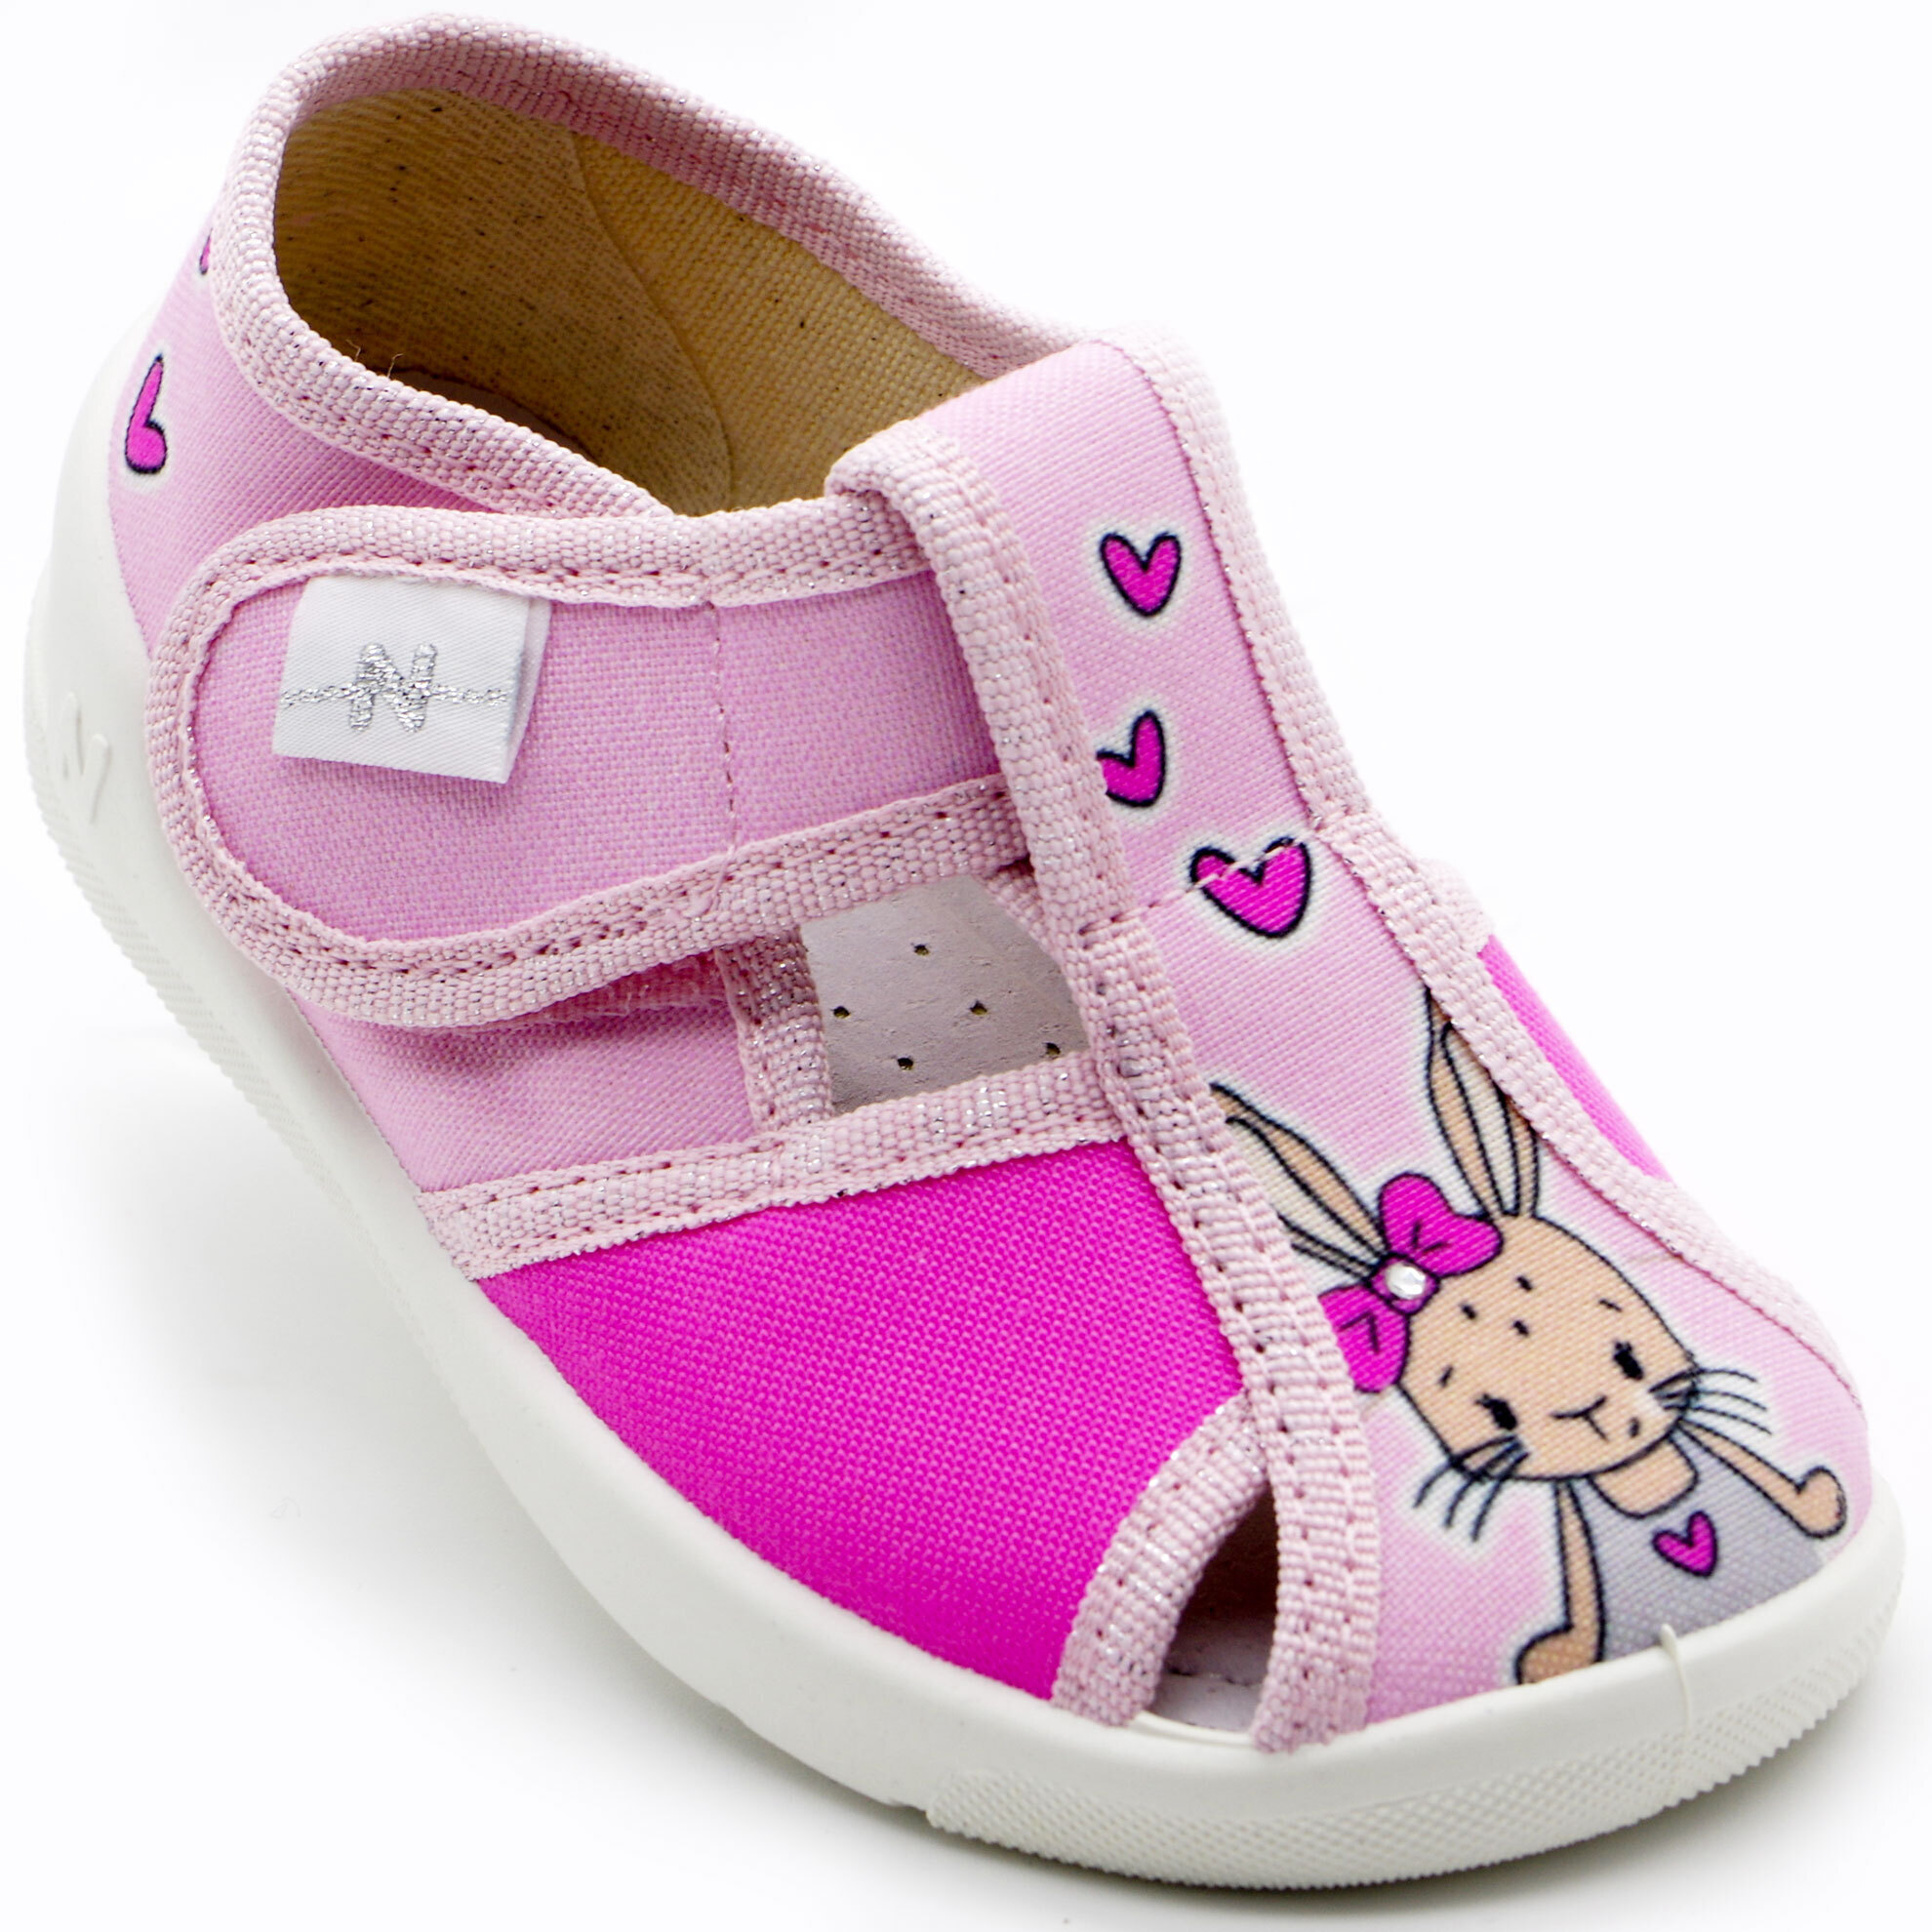 Текстильная обувь для девочек Тапочки Merlin (2205) цвет Розовый 18-25 размеры – Sole Kids. Фото 1